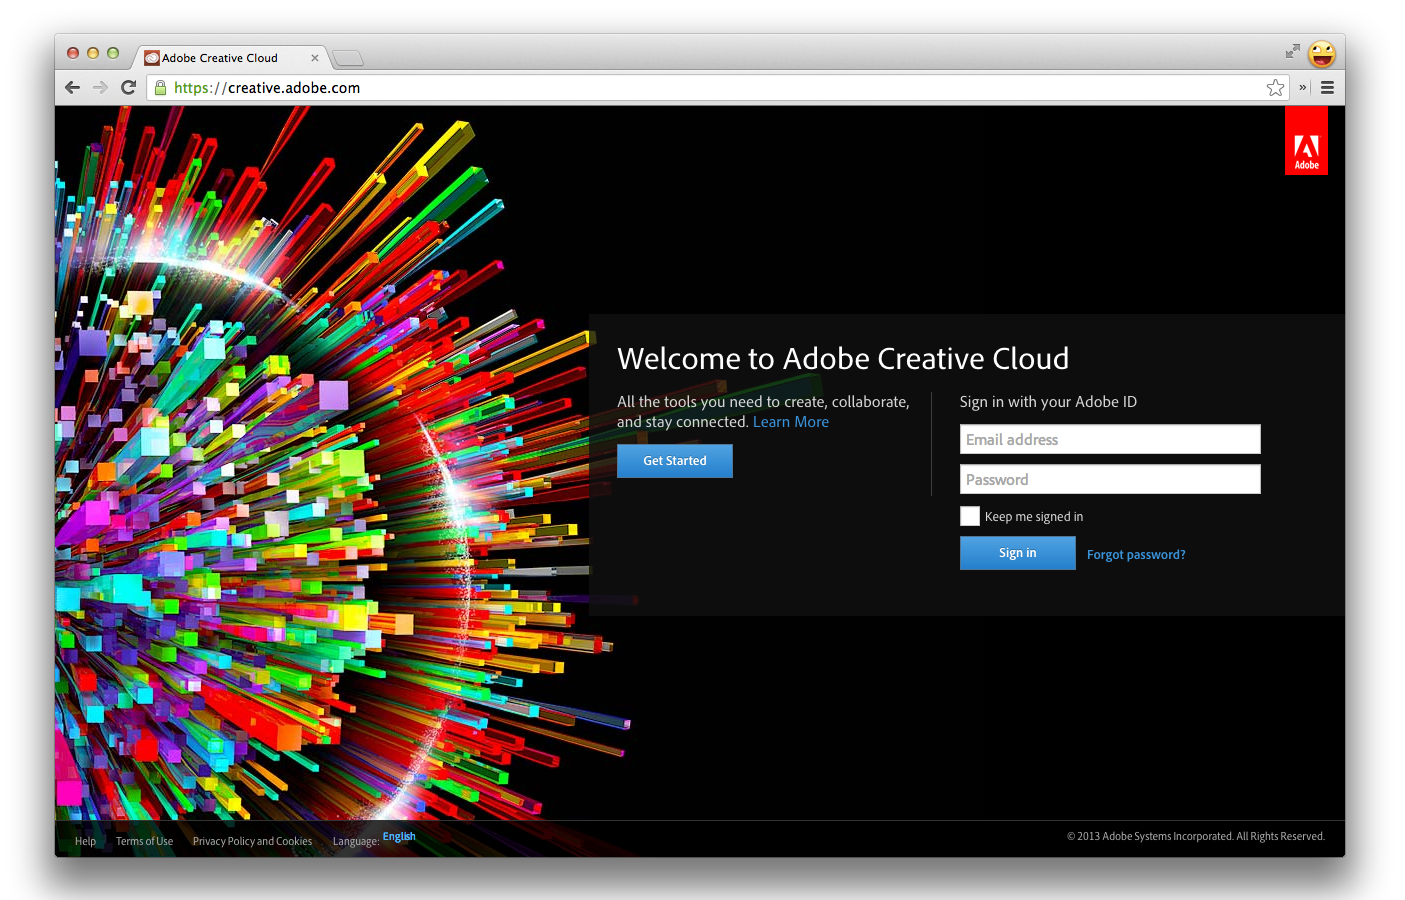 Subskrypcja Creative Cloud firmy Adobe obejmuje Inspekcję Edge